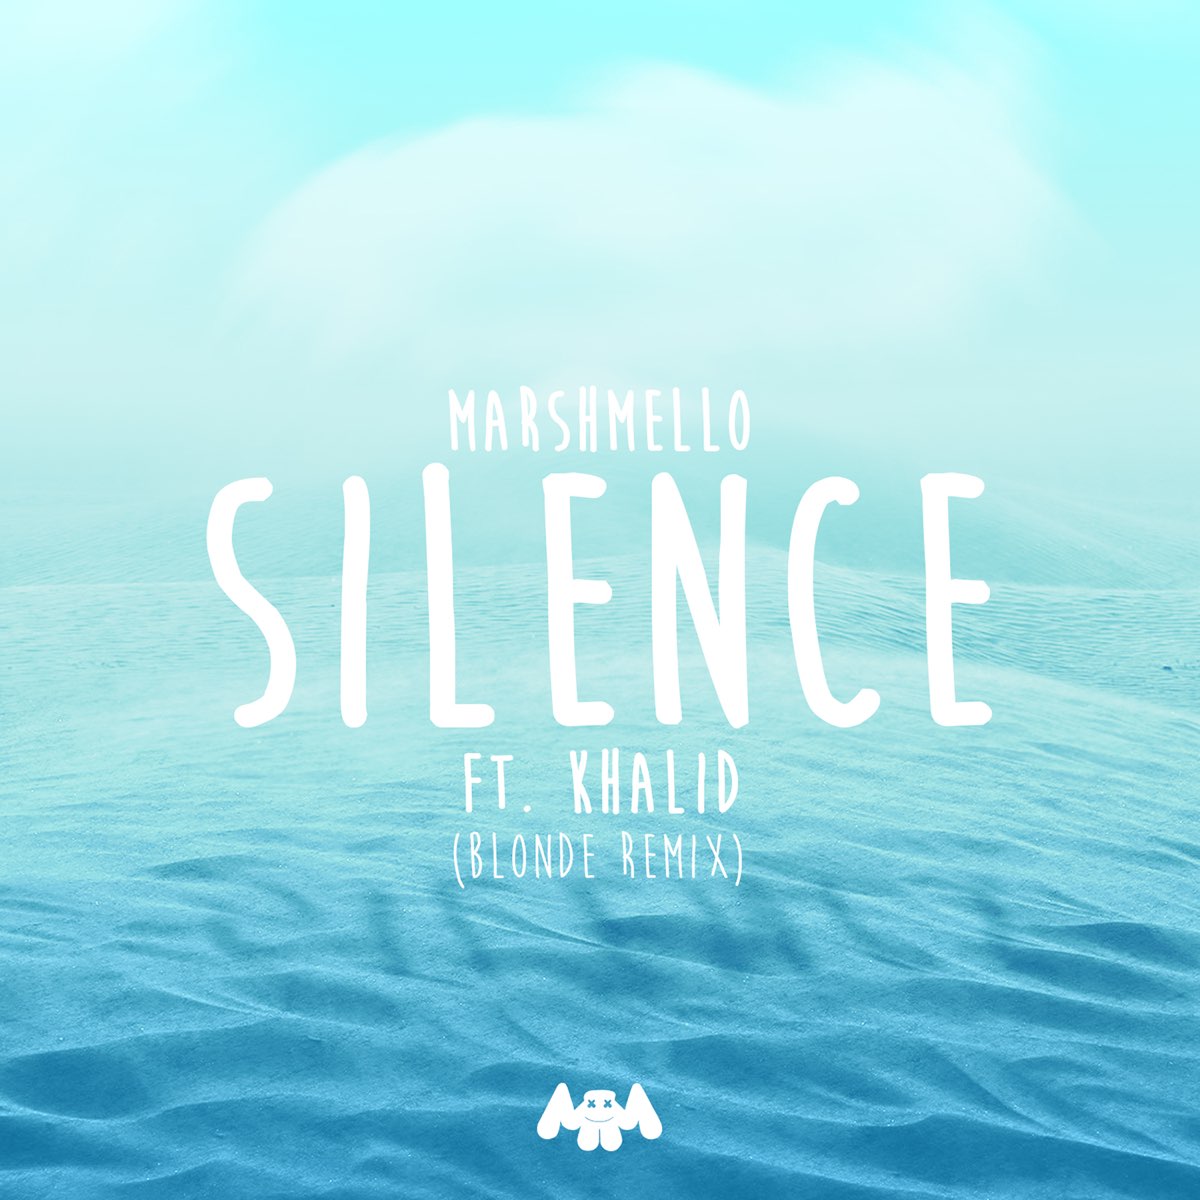 Silence Халид. Marshmallow Silence. Silence надпись. Marshmallow Khalid Silence. Blonde remix